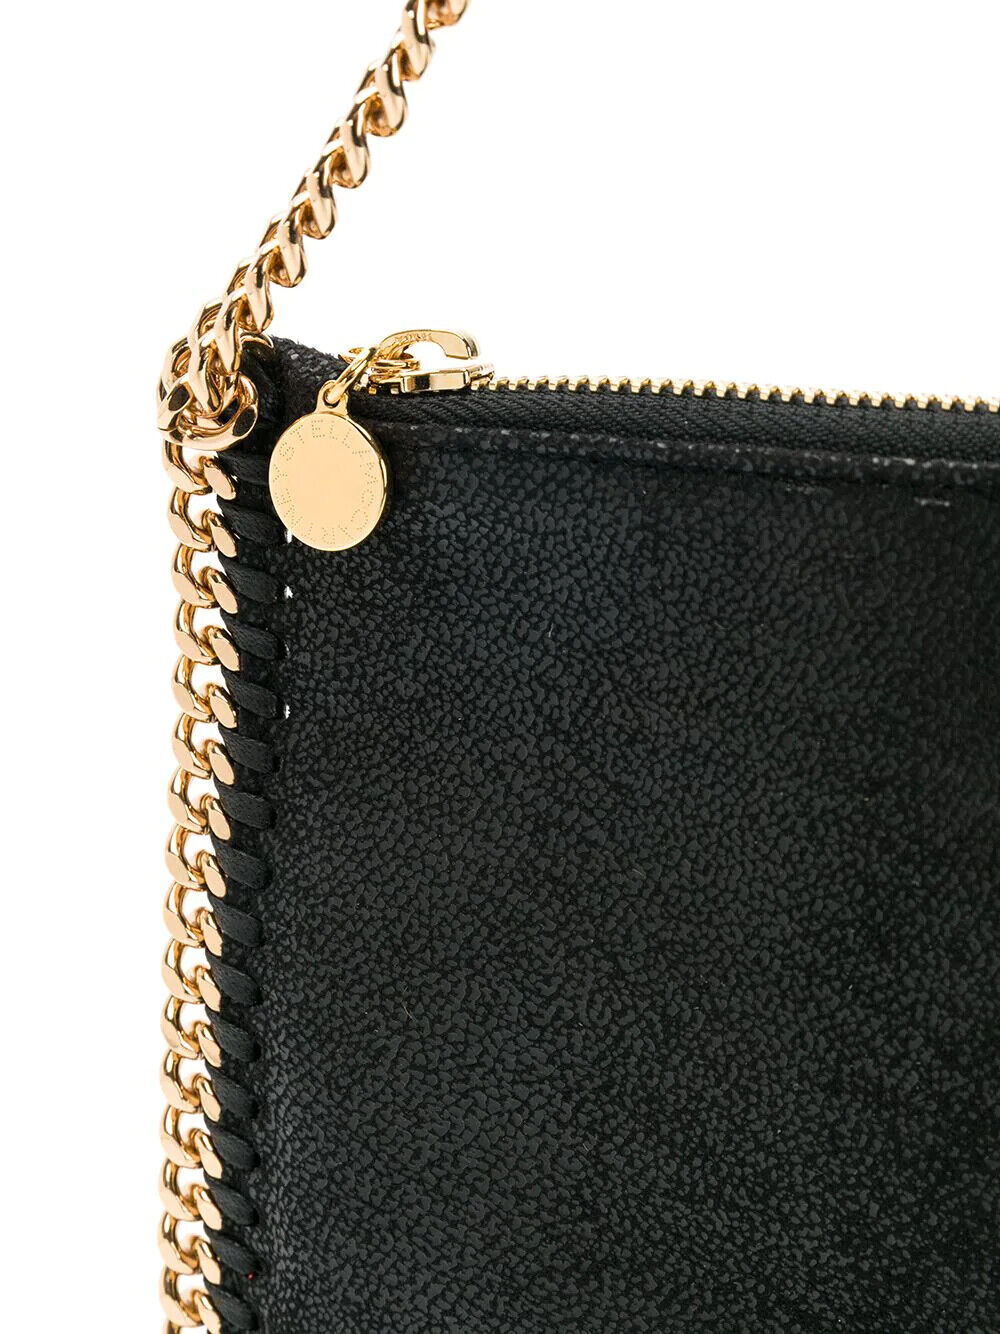 NWT NEW Stella McCartney women's black gold Falabella Clutch Bag